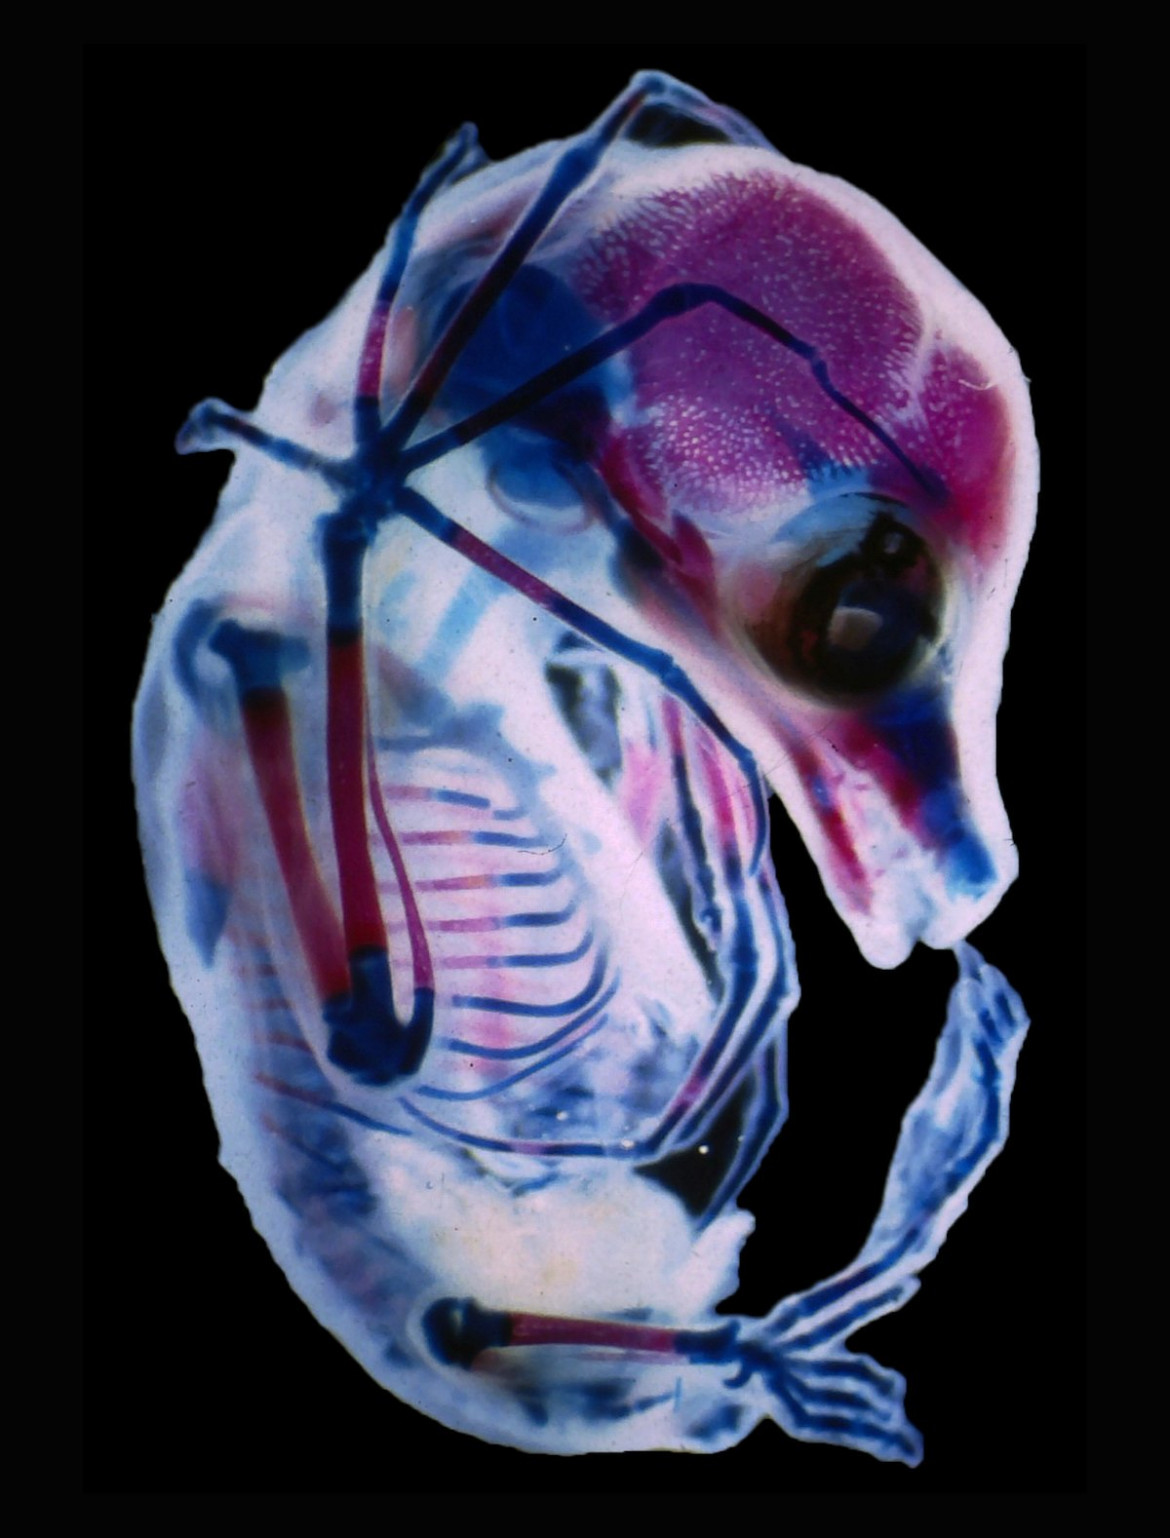 fot. Dr. Rick Adams, 3-tygodniony płód nietoperza z rodziny Megachiroptera, 15. miejsce w konkursie